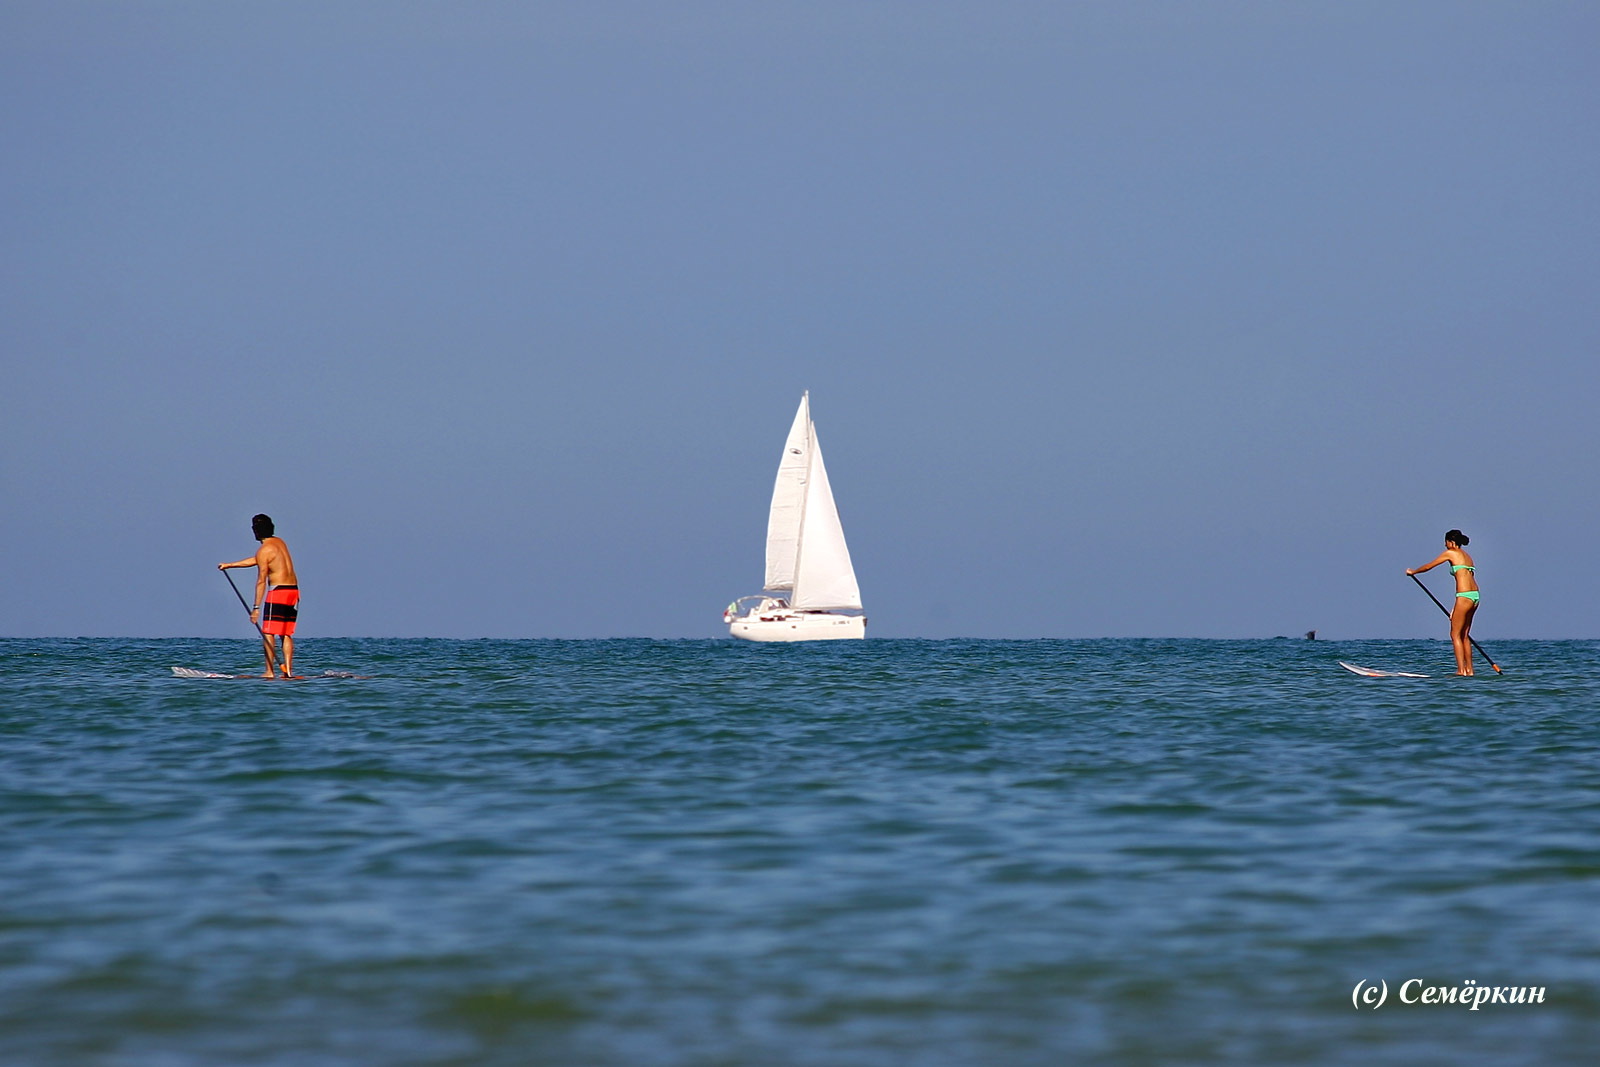 Римини - море, яхта и идущие по воде мужчина и женщина